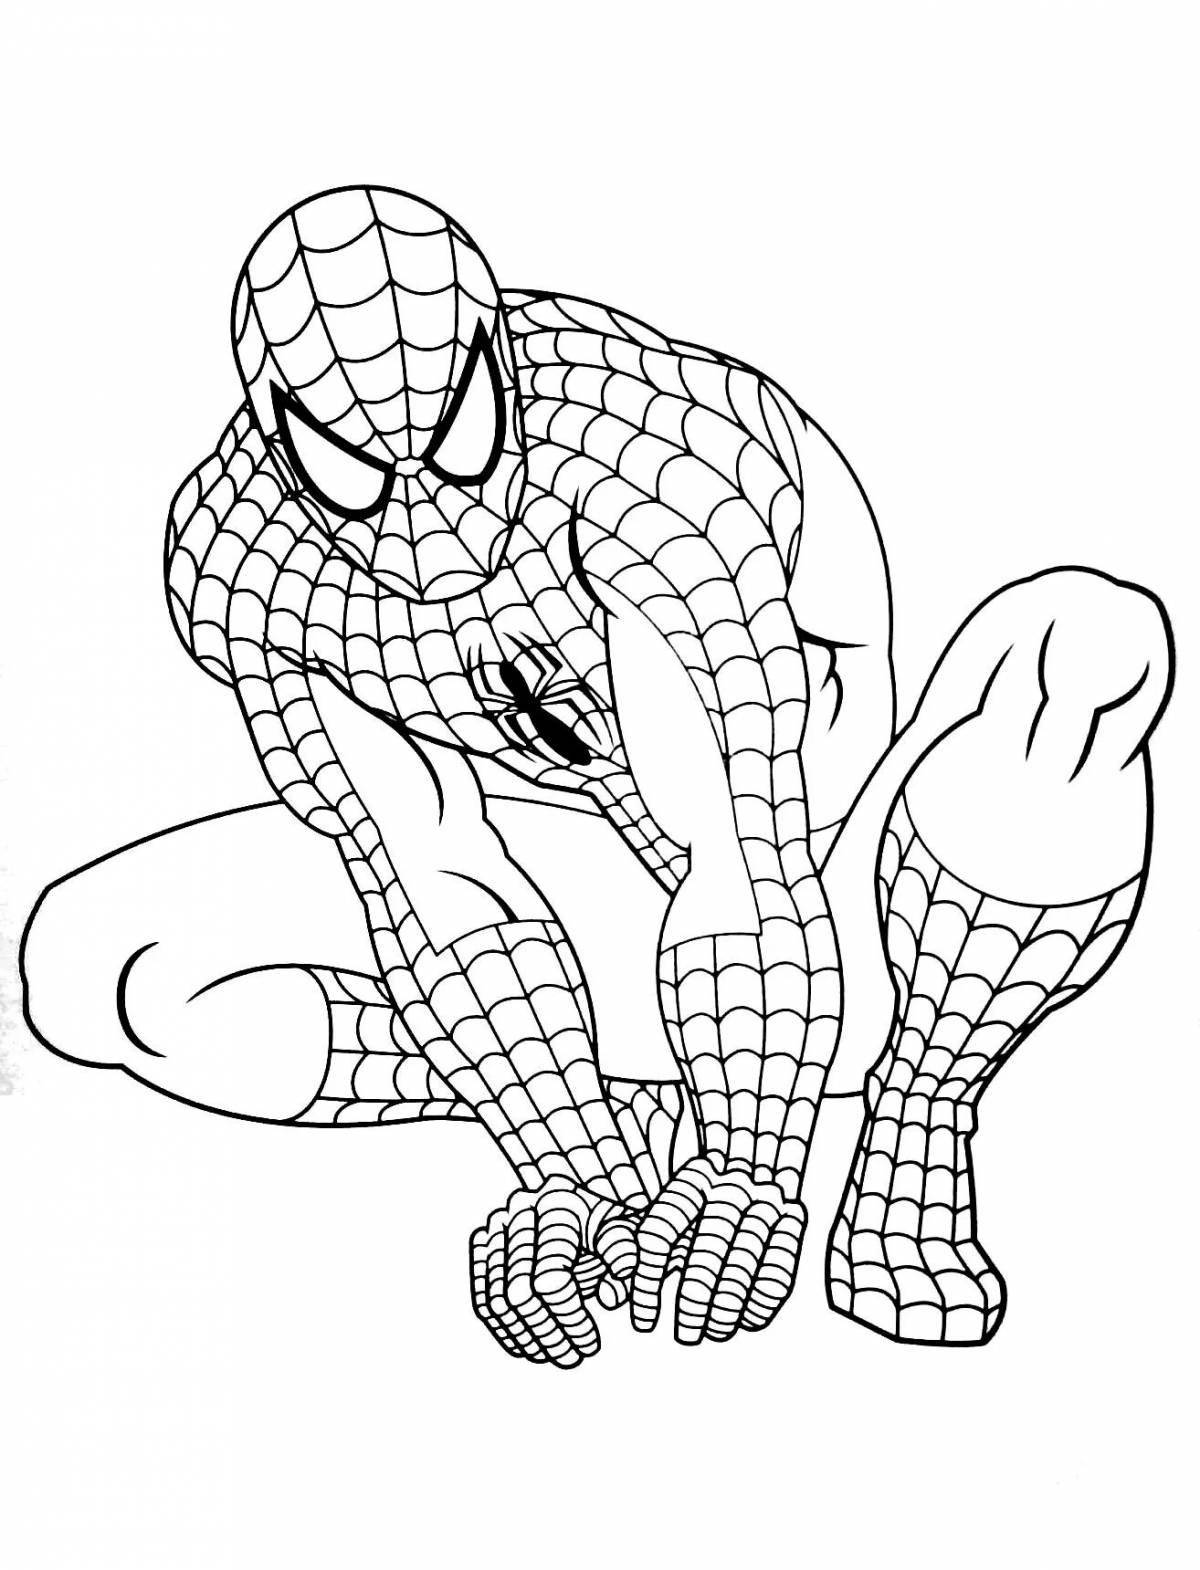 Fun drawing of Spiderman